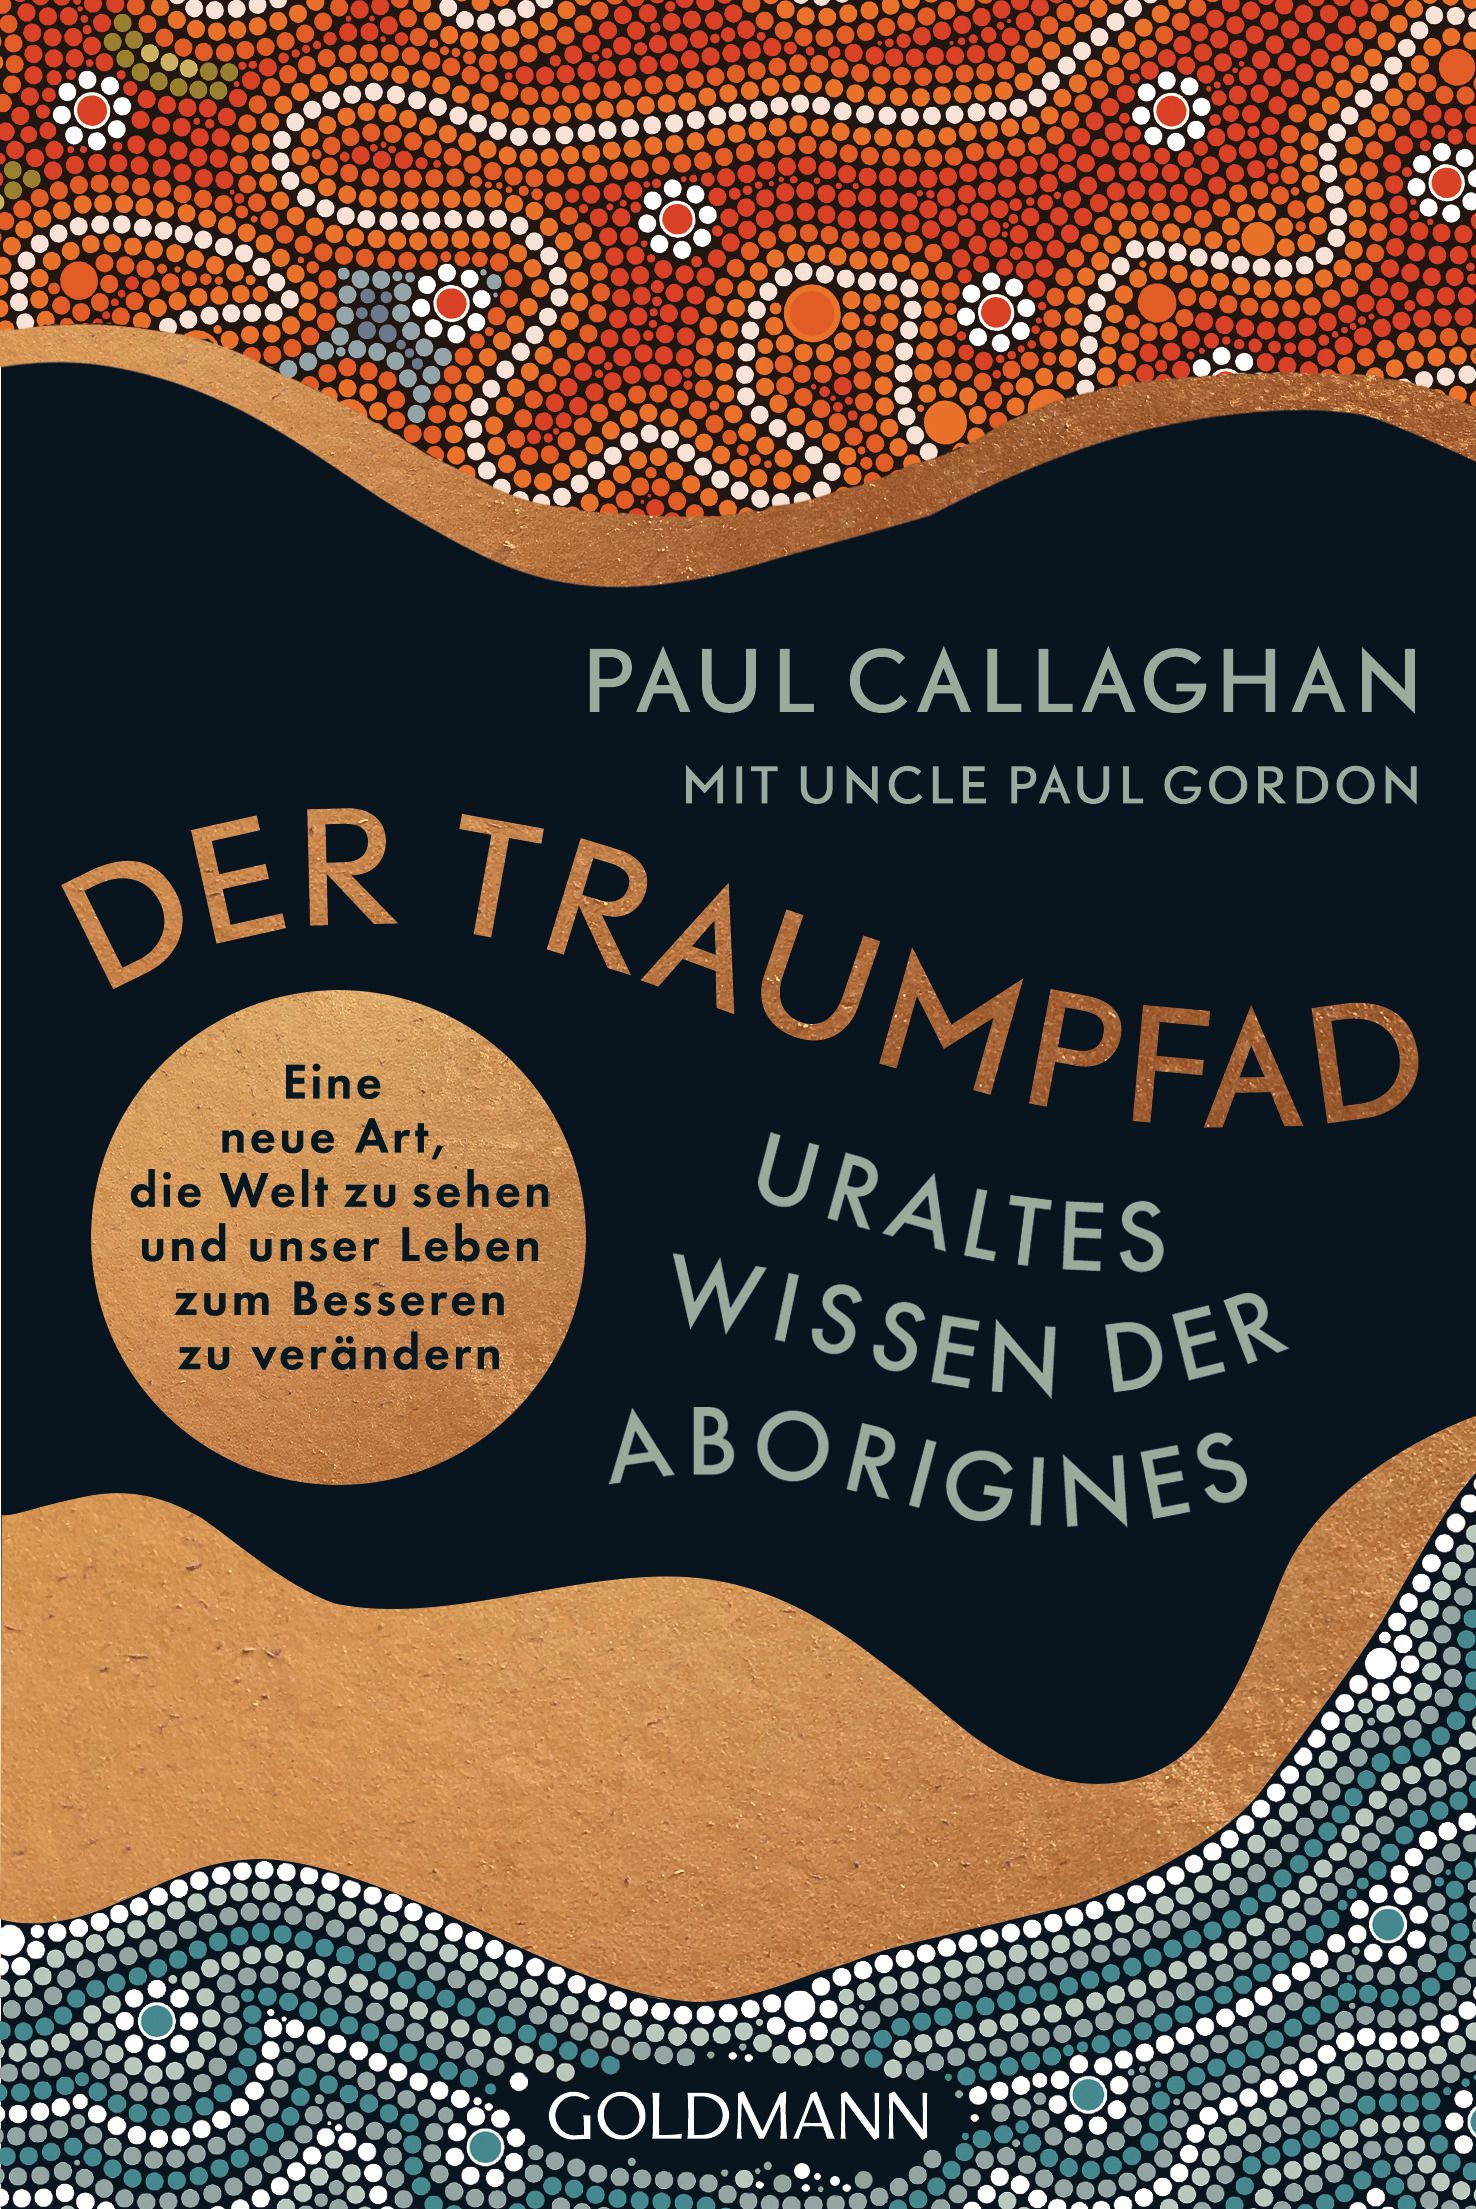 Traumpfade – Uraltes Wissen der Aborigines